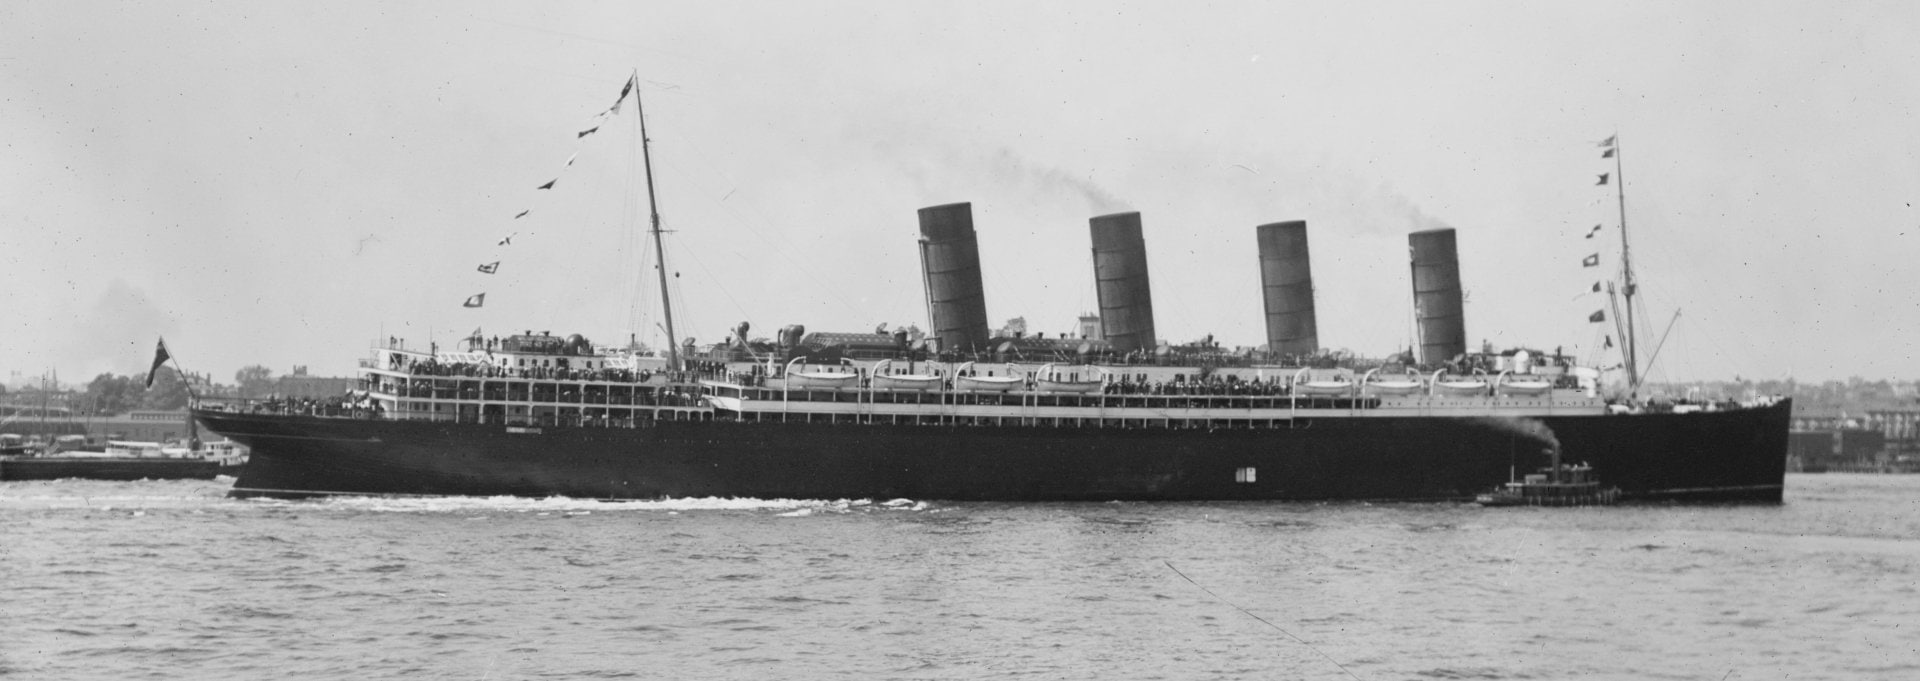 Vehicles, Rms Lusitania